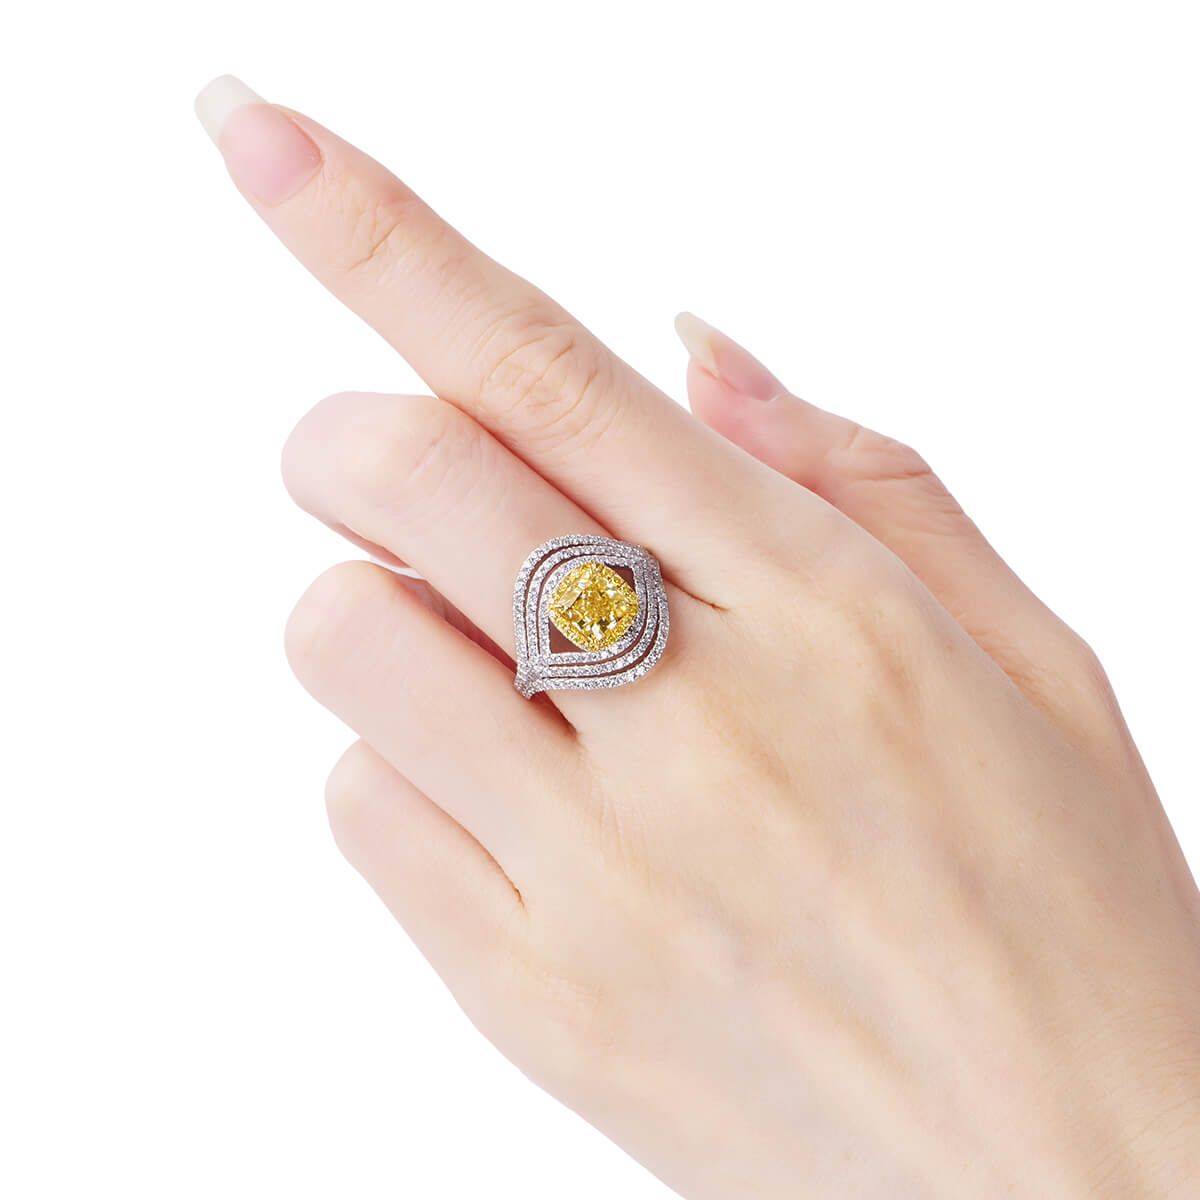 Fancy Yellow Diamond Ring, 1.53 Ct. (2.40 Ct. TW), Cushion shape, GIA Certified, 2156970229